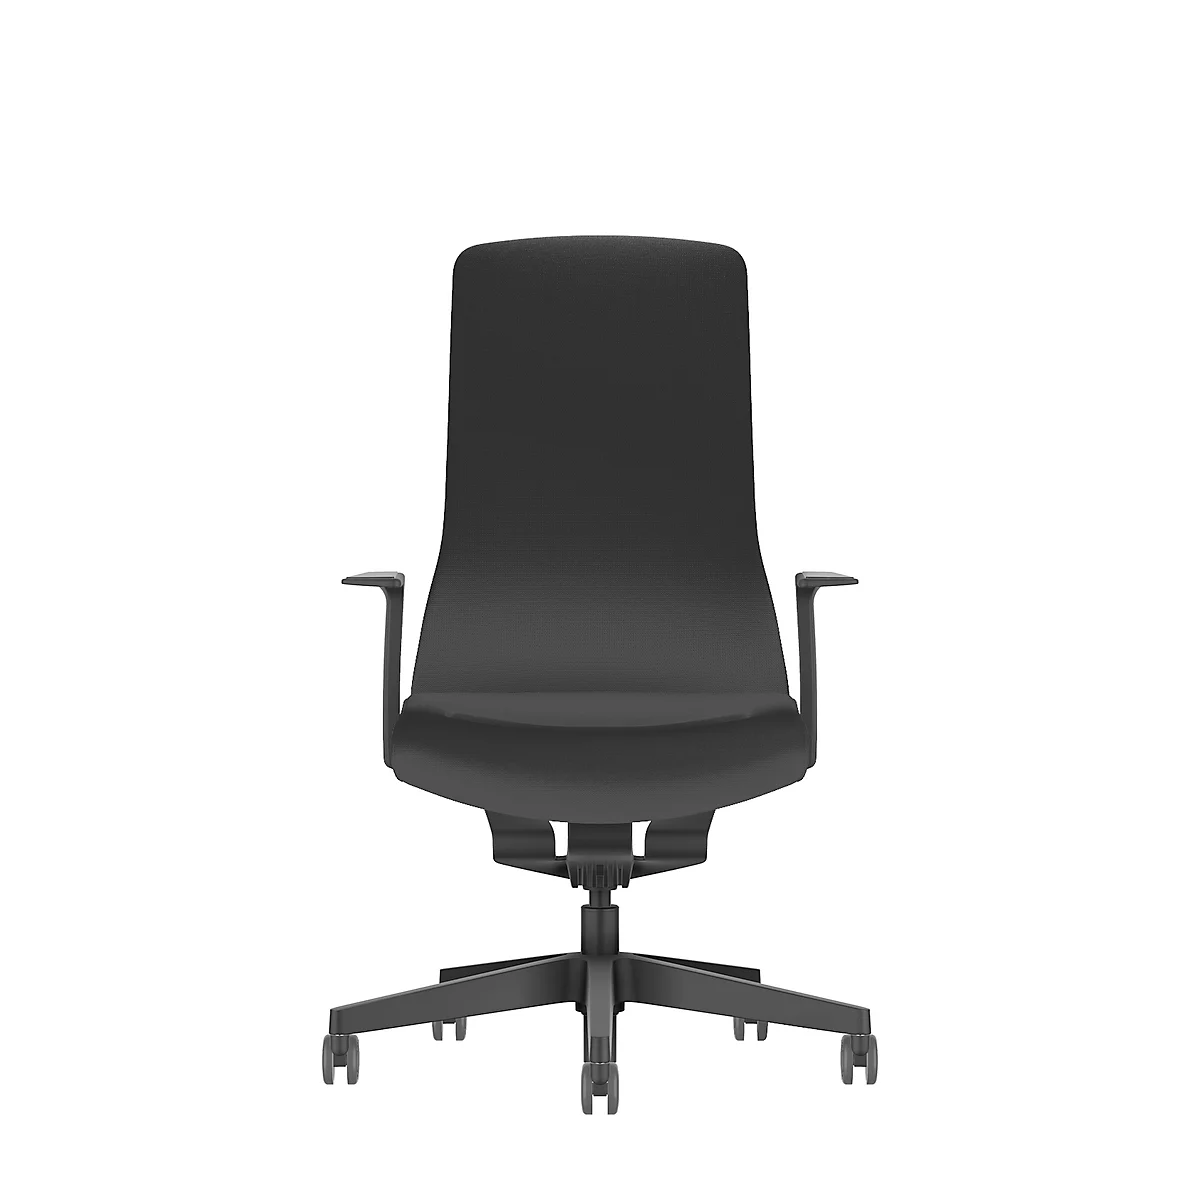 Interstuhl bureaustoel PUREis3, vaste armleuningen, 3D auto-synchroonmechanisme, kuipzitting, gestoffeerde rug, zwart/zwart